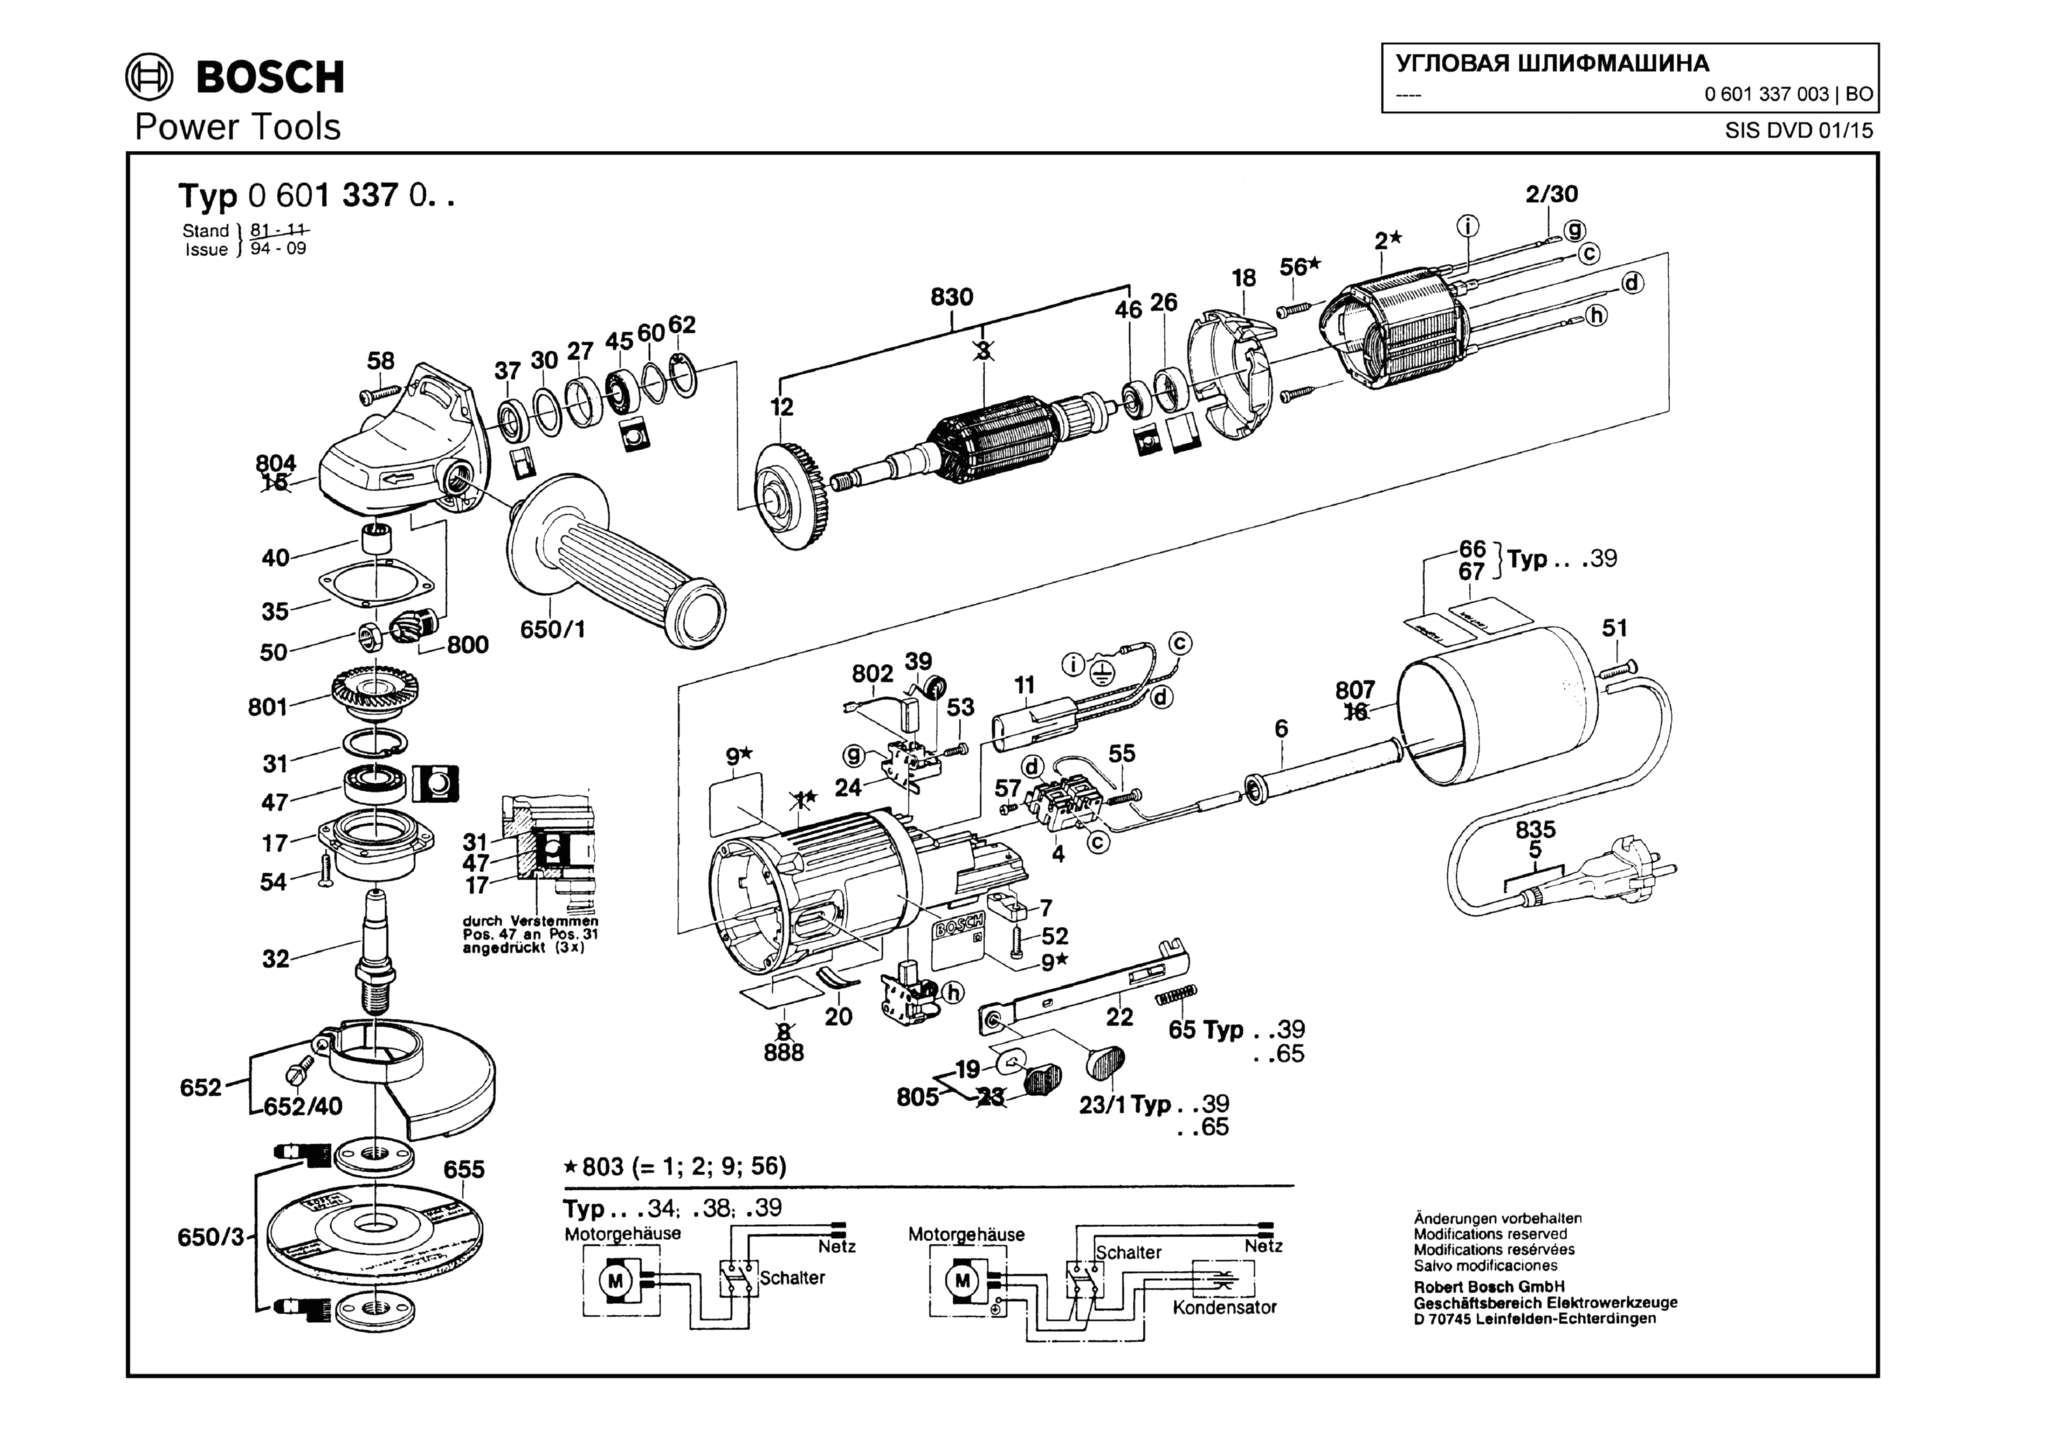 Запчасти, схема и деталировка Bosch (ТИП 0601337003)